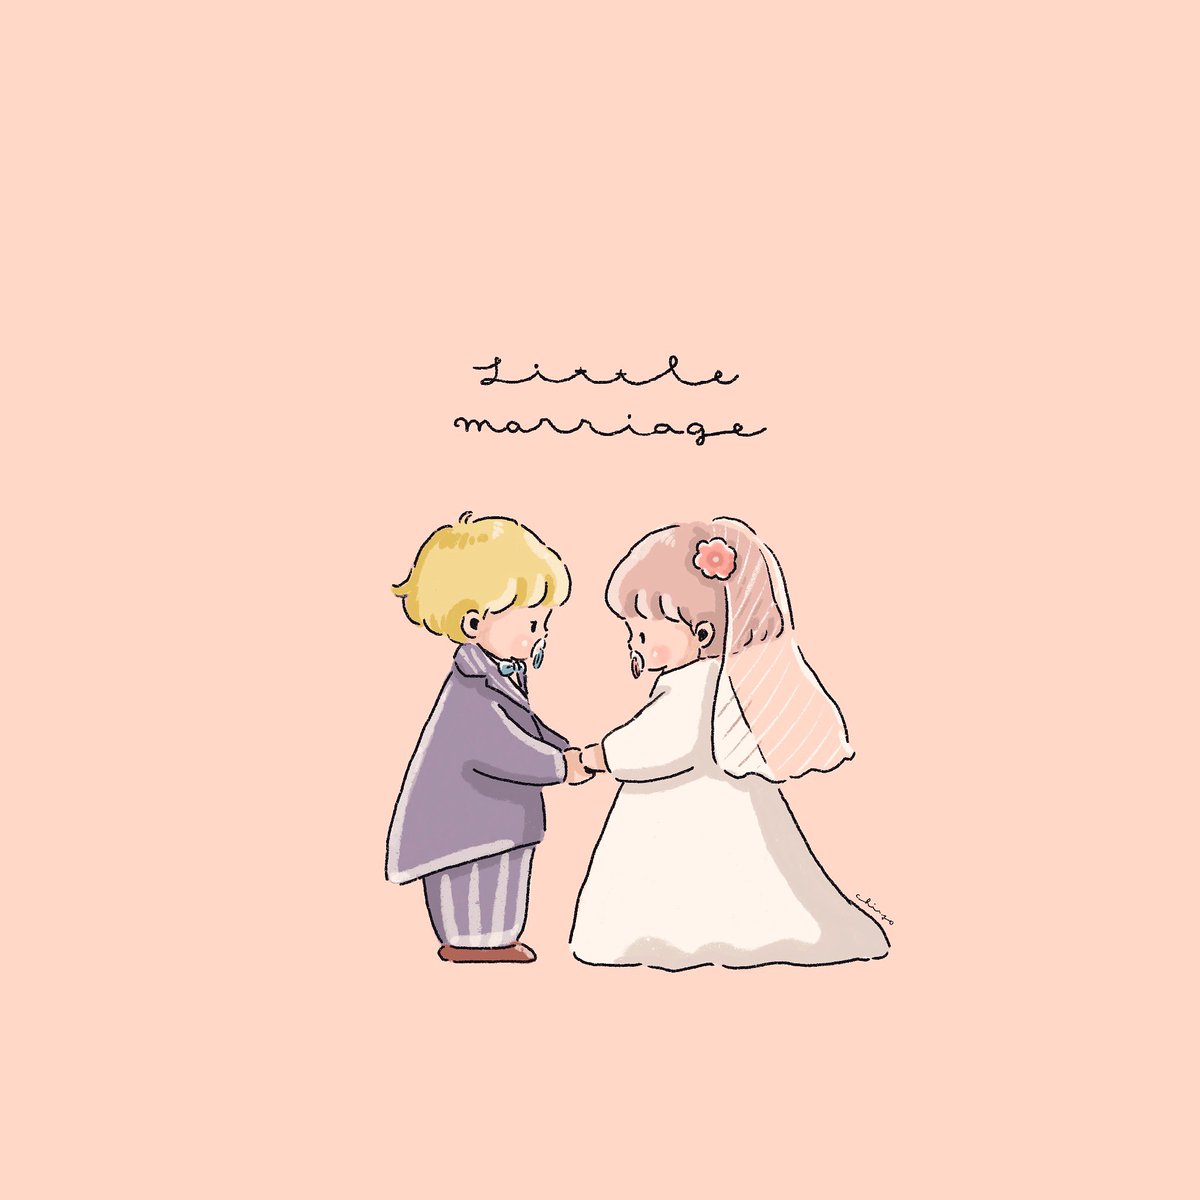 Chiyo 在 Twitter 上 ずっと一緒にいようね プロポーズの日 結婚 赤ちゃん イラスト Illustration T Co Exfdikvulz Twitter